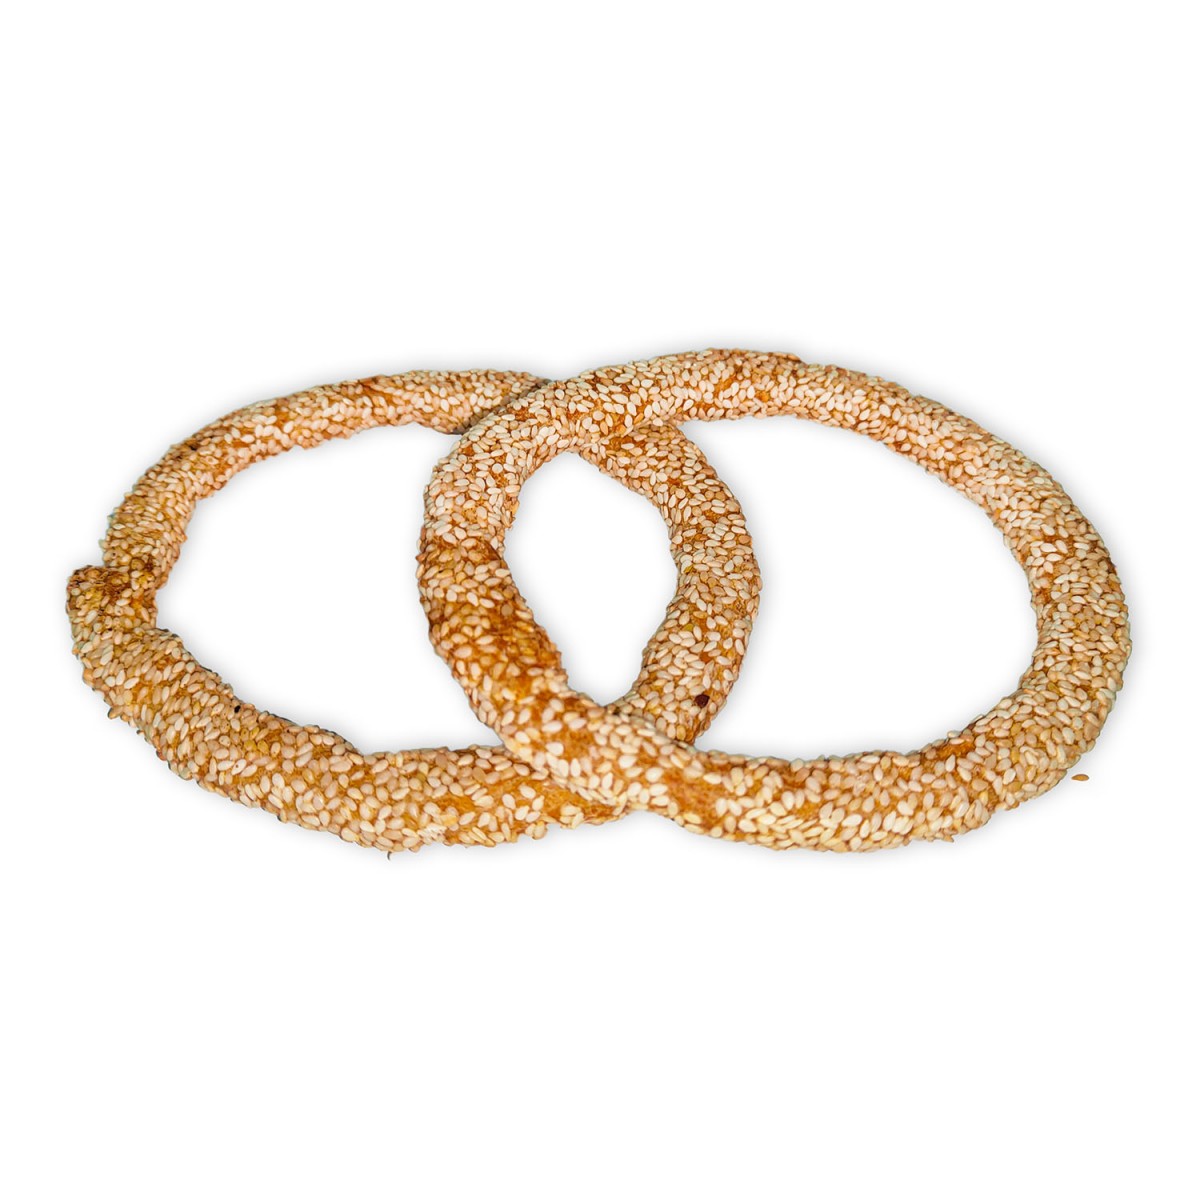 Bread rings